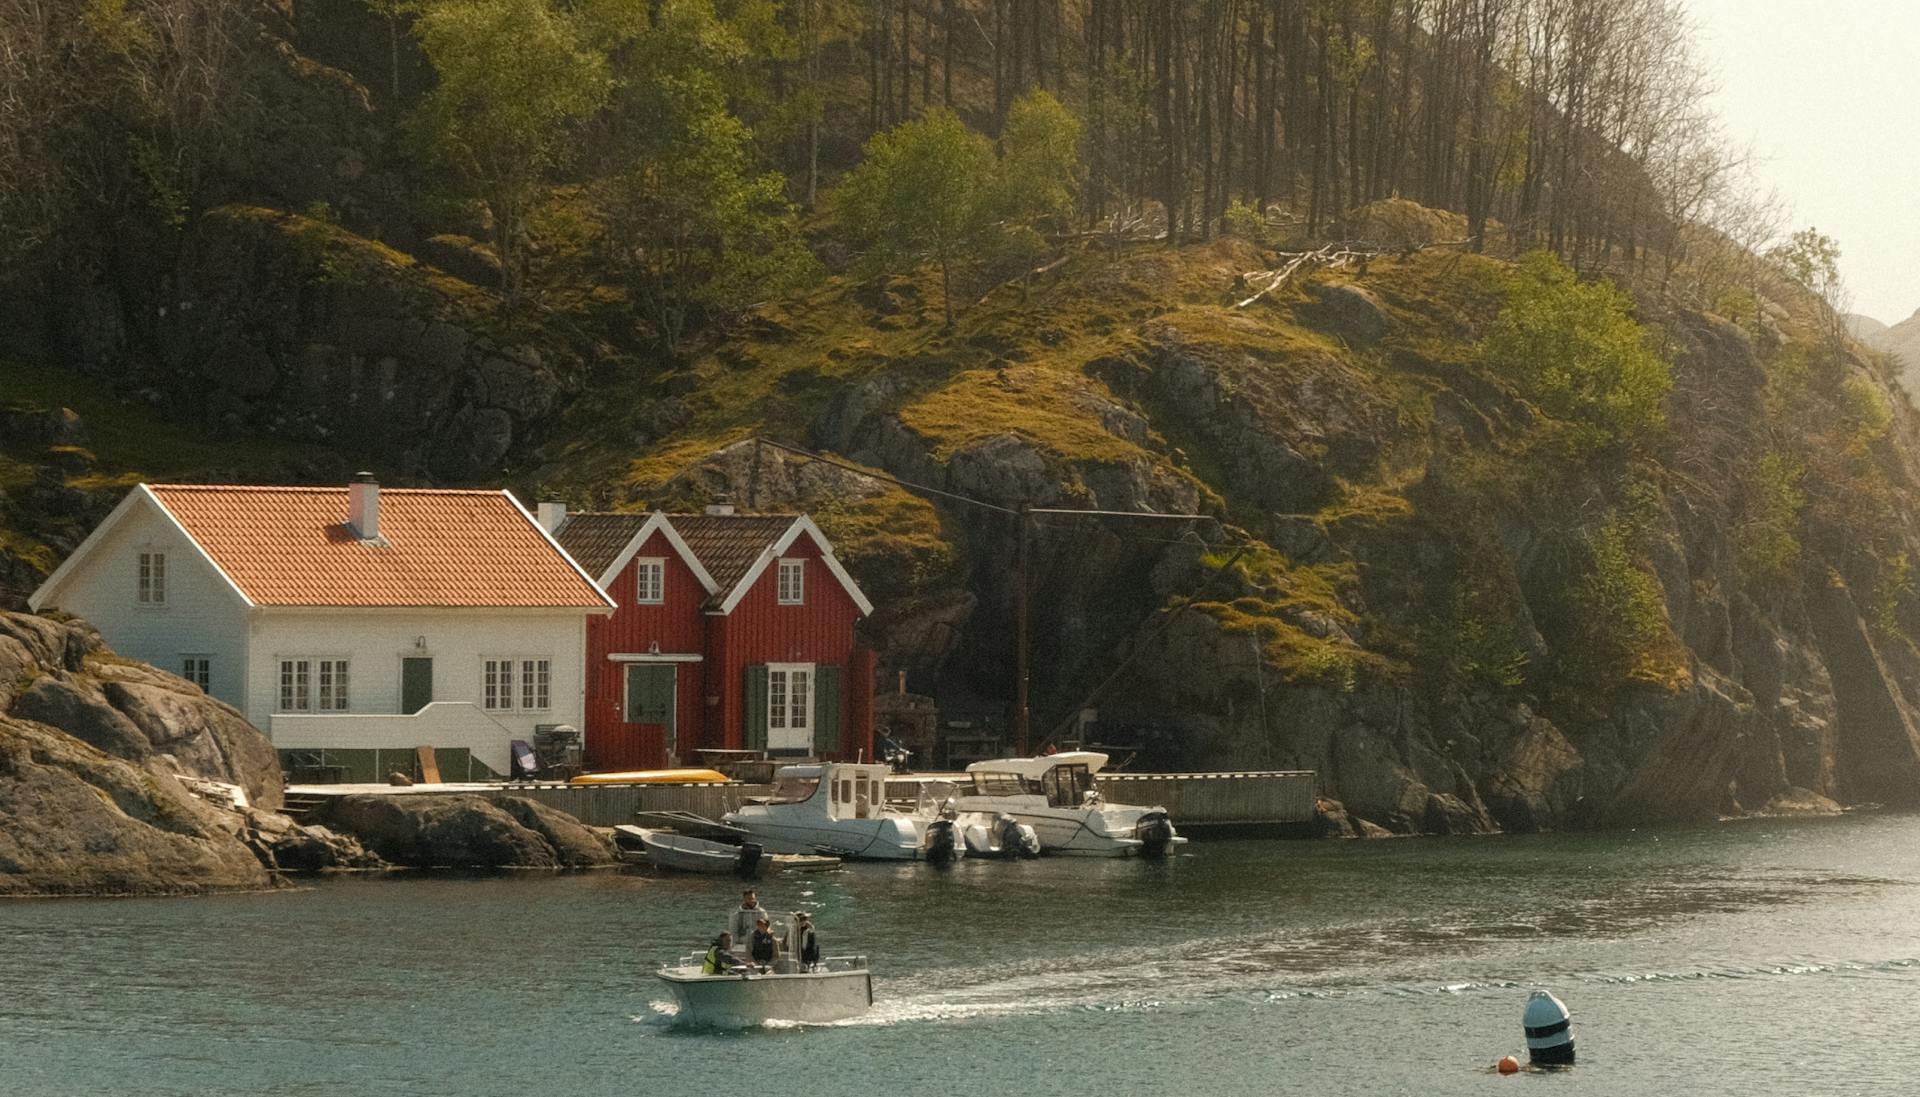 Vestlandet i Norge med smukke små sommerhuse langs kysten